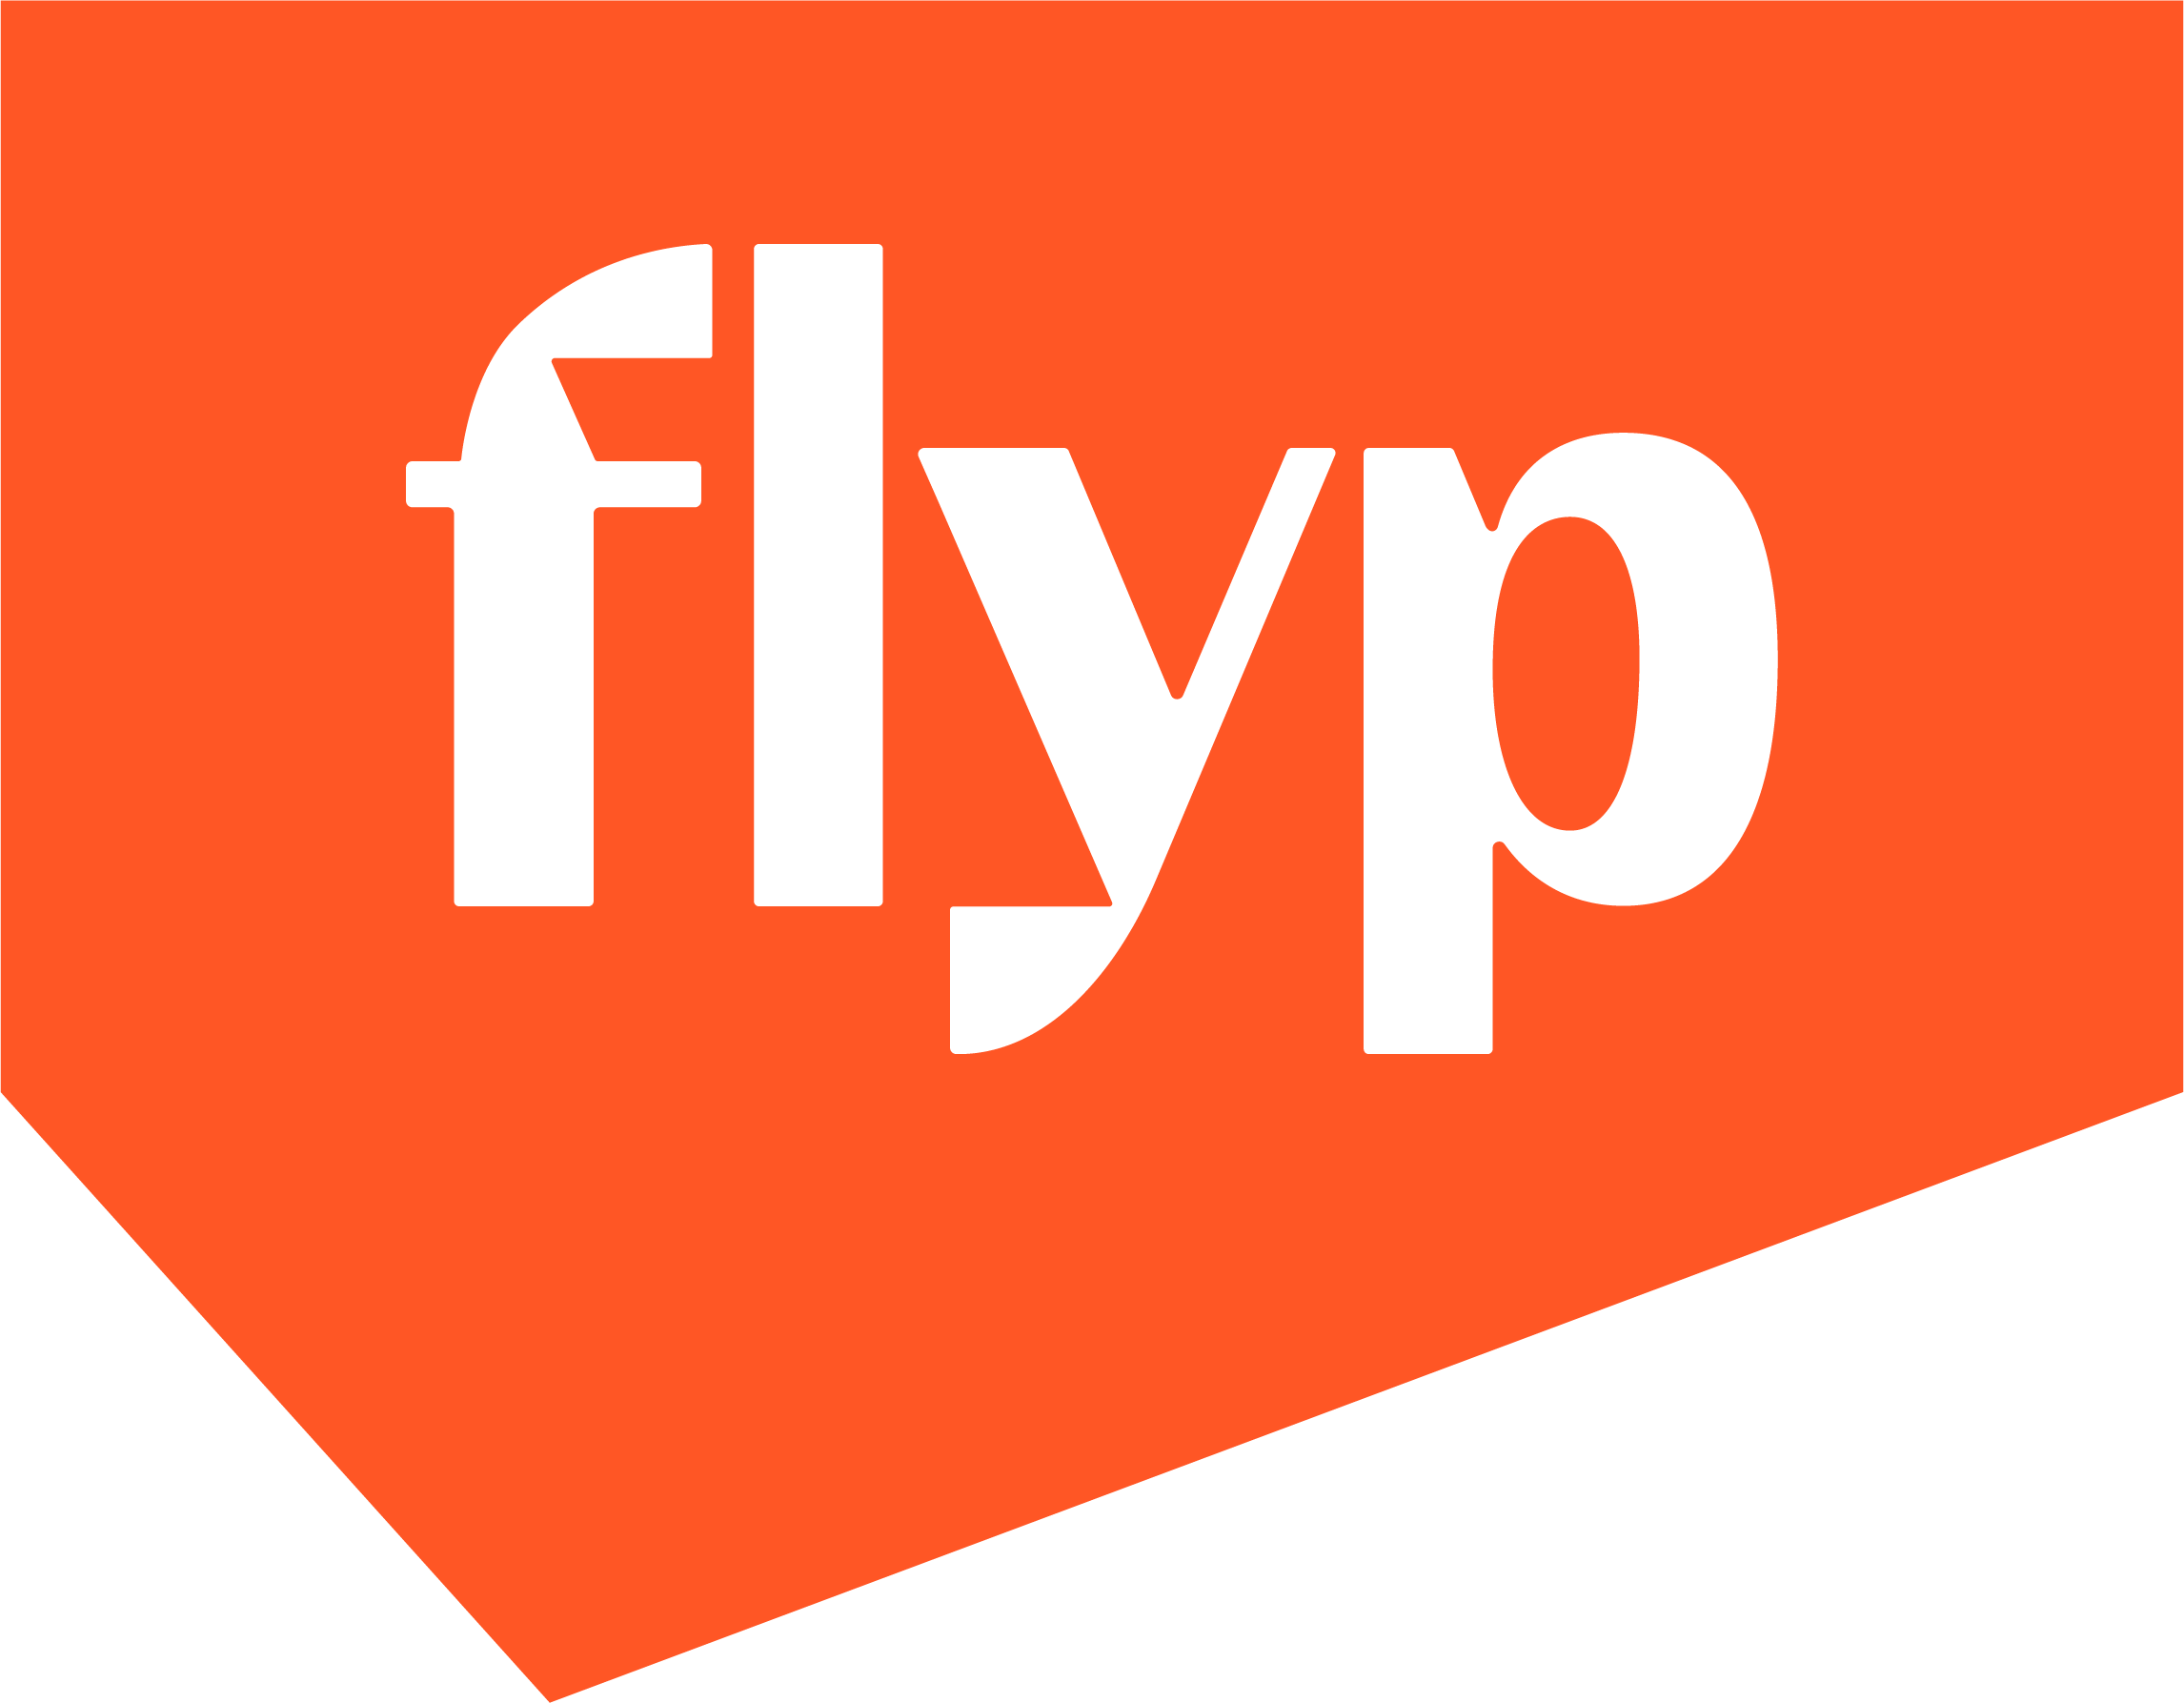 Flyp